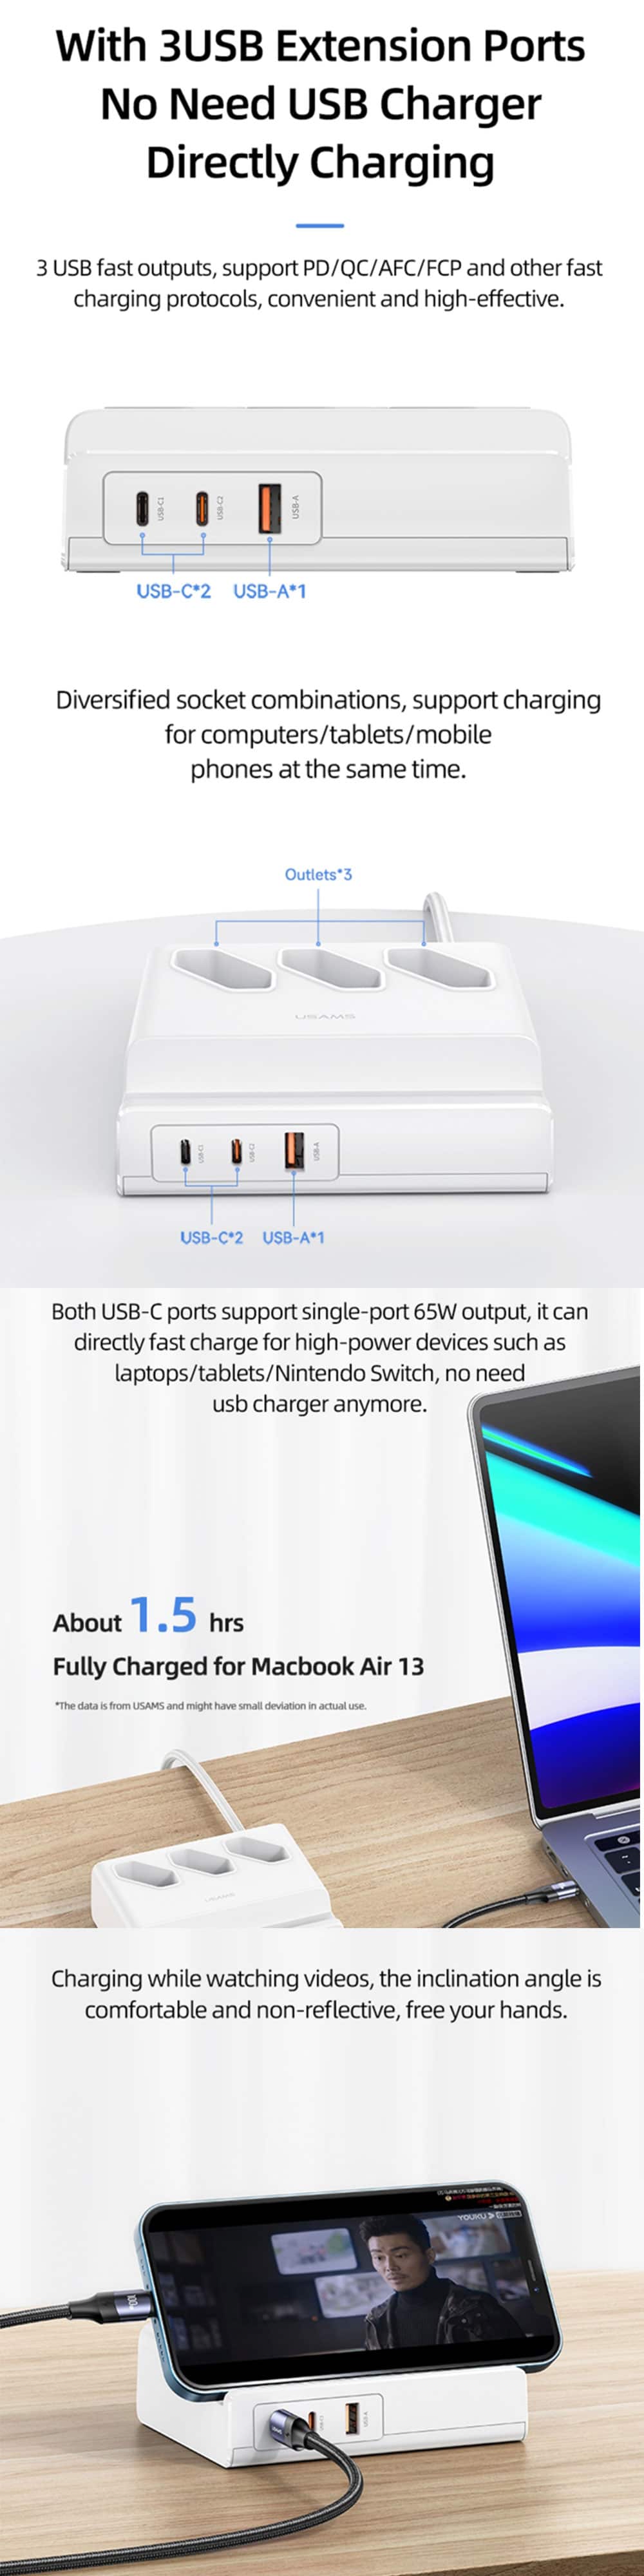 USAMS US CC160 65W Super Si Fast Charging USB Extension Socket EU Plug 3